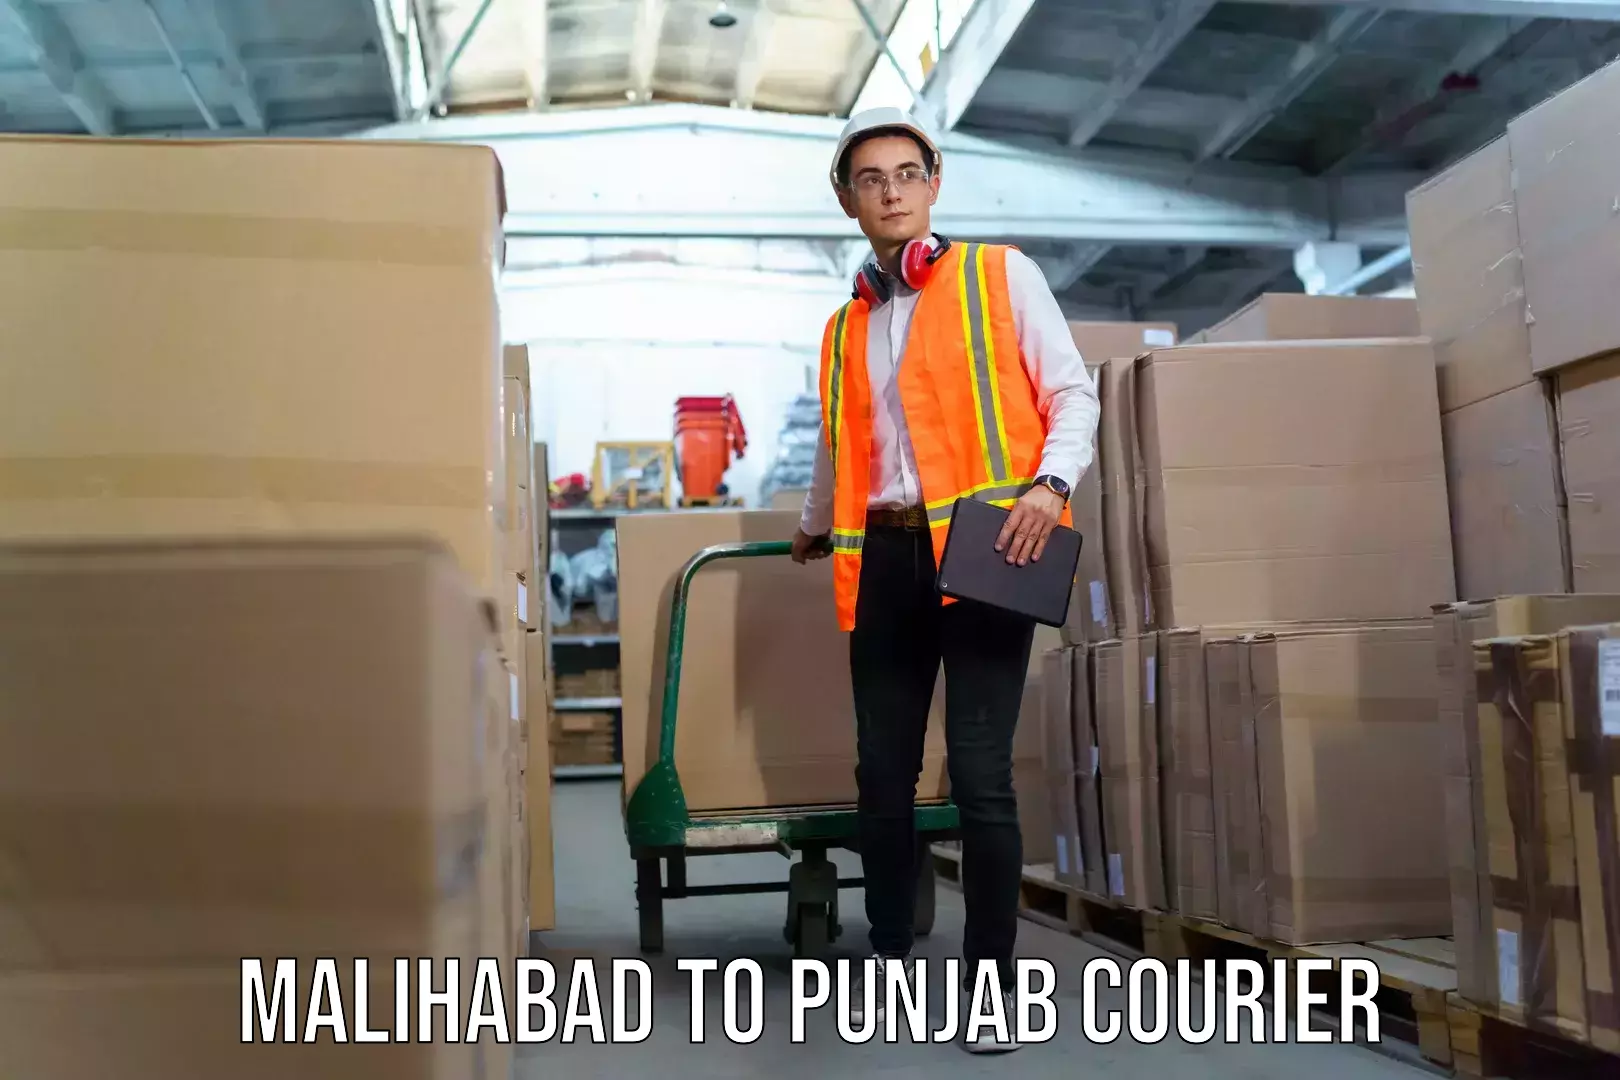 Nationwide luggage courier Malihabad to Punjab